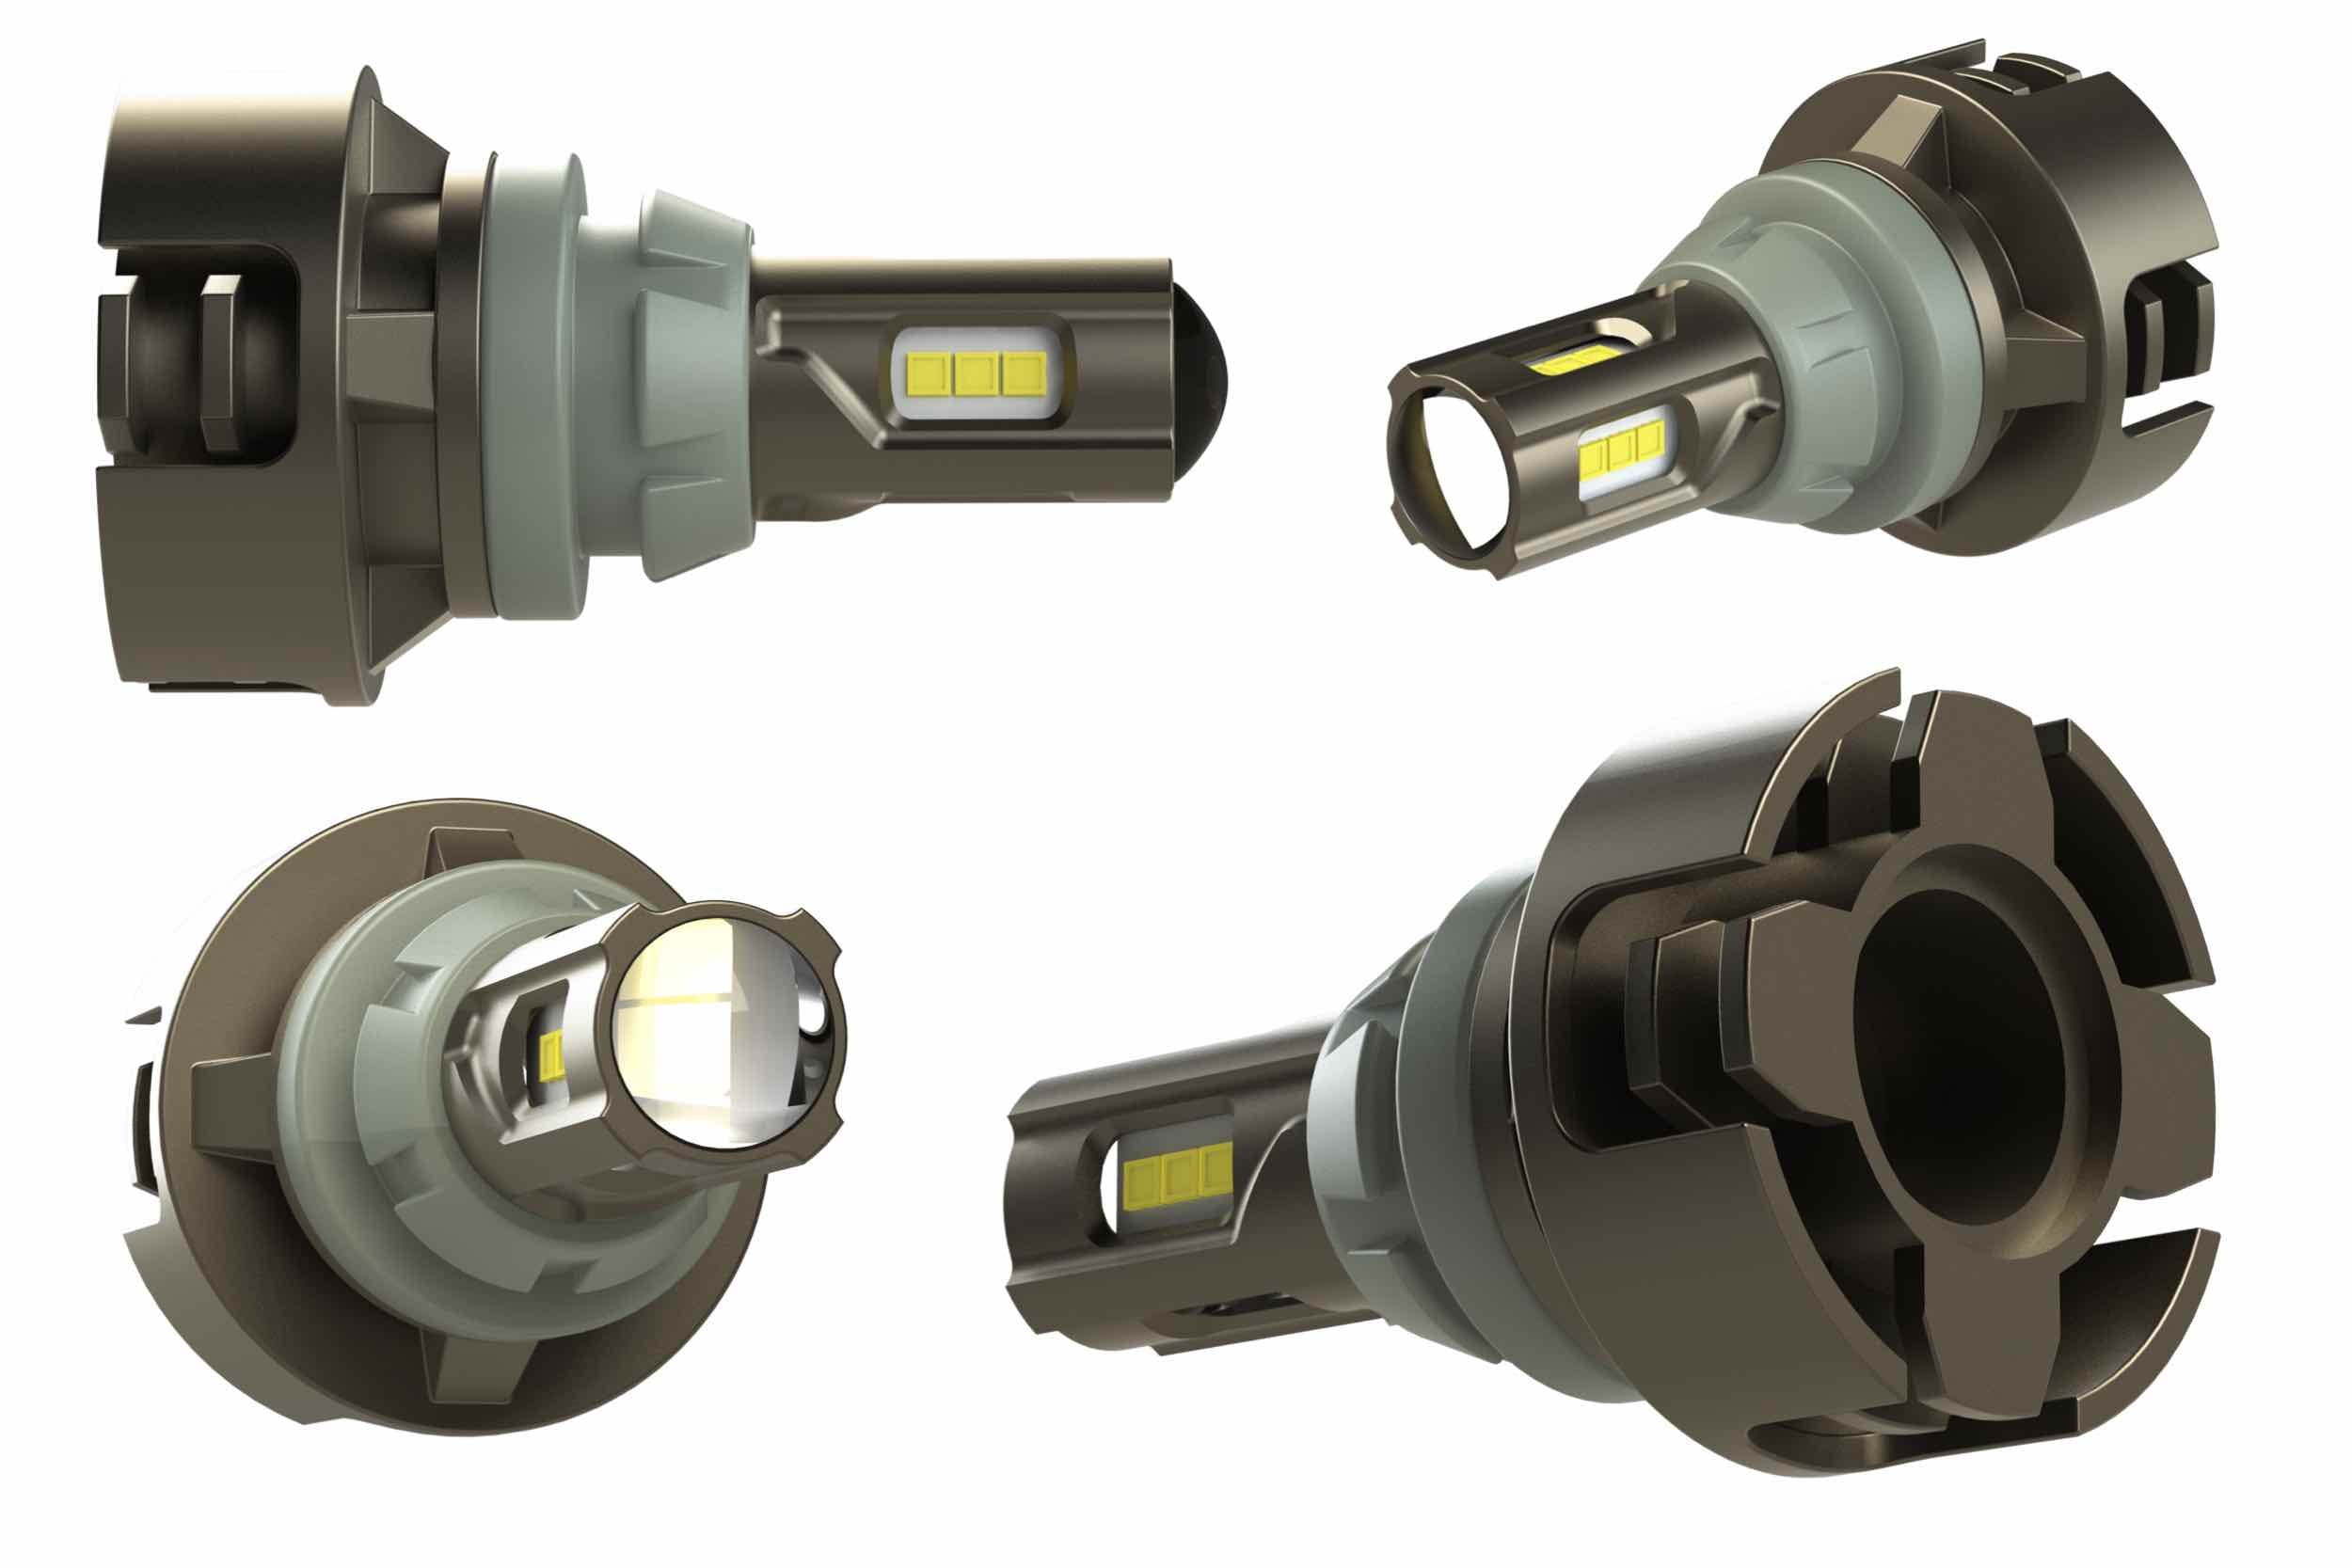 921: GTR Lighting Ultra Series LED Reverse Bulb-GTR.LED434